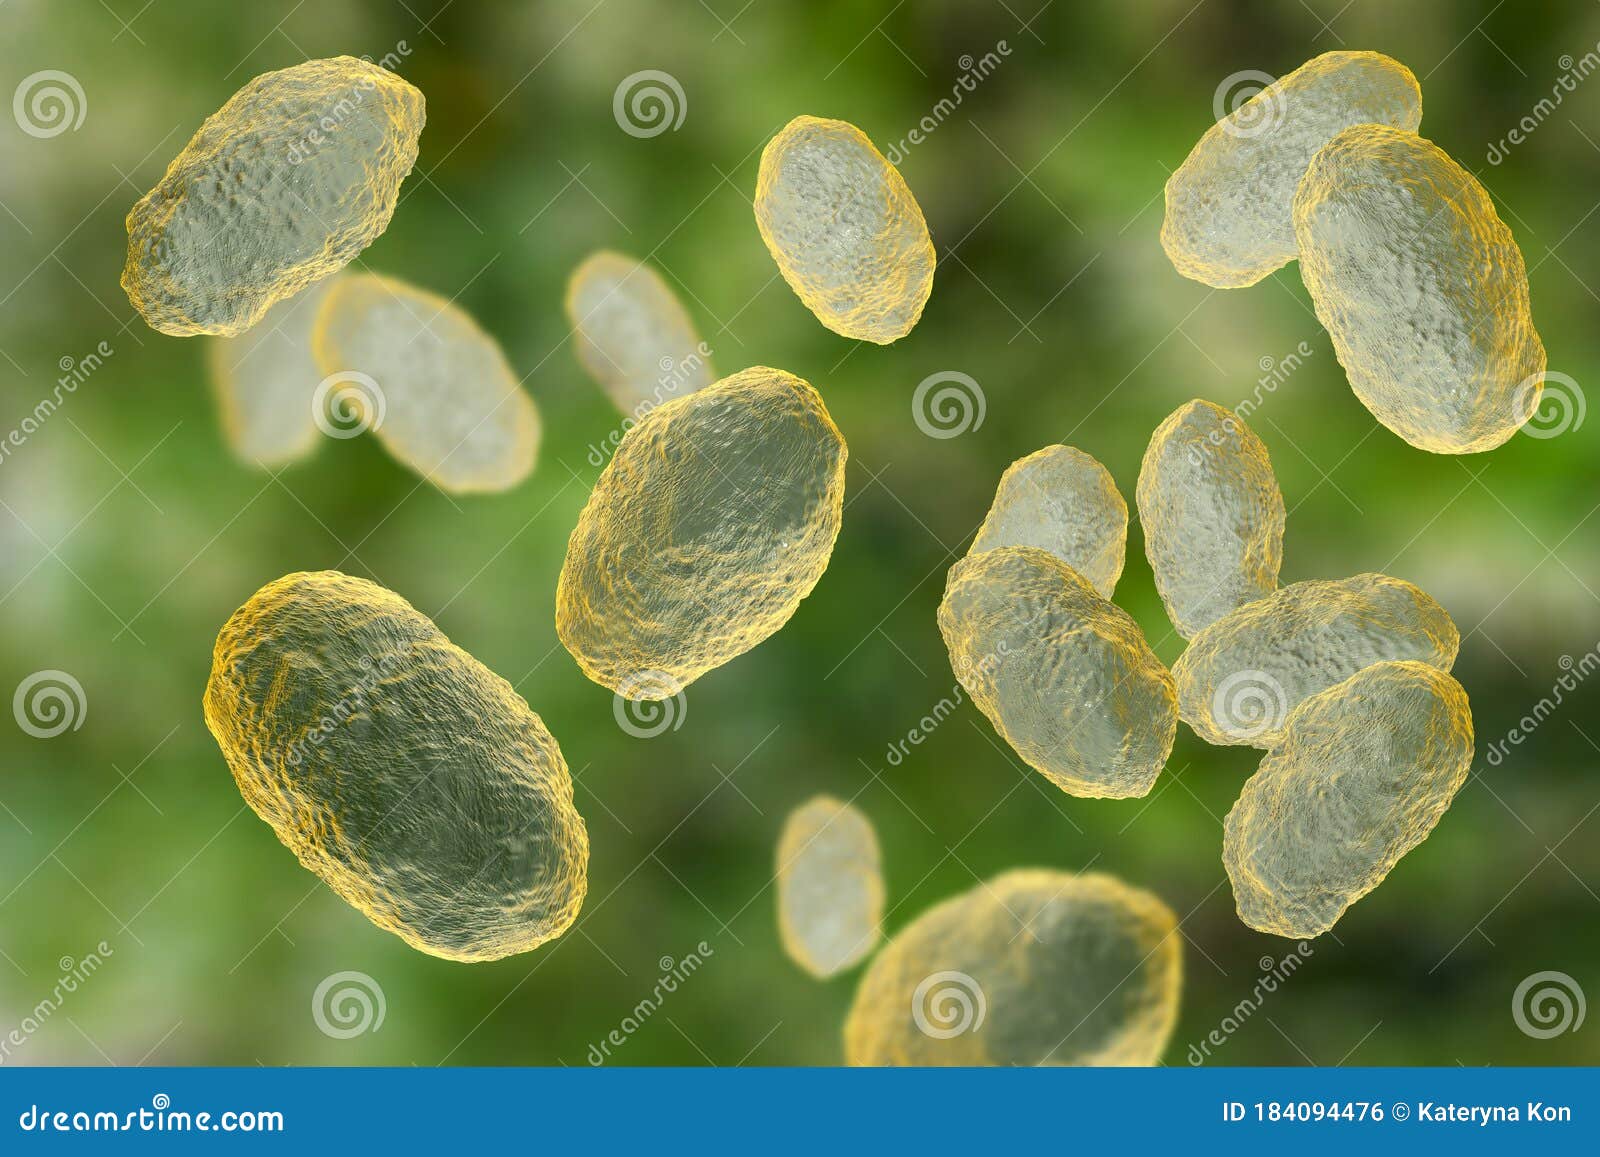 haemophilus influenzae bacteria